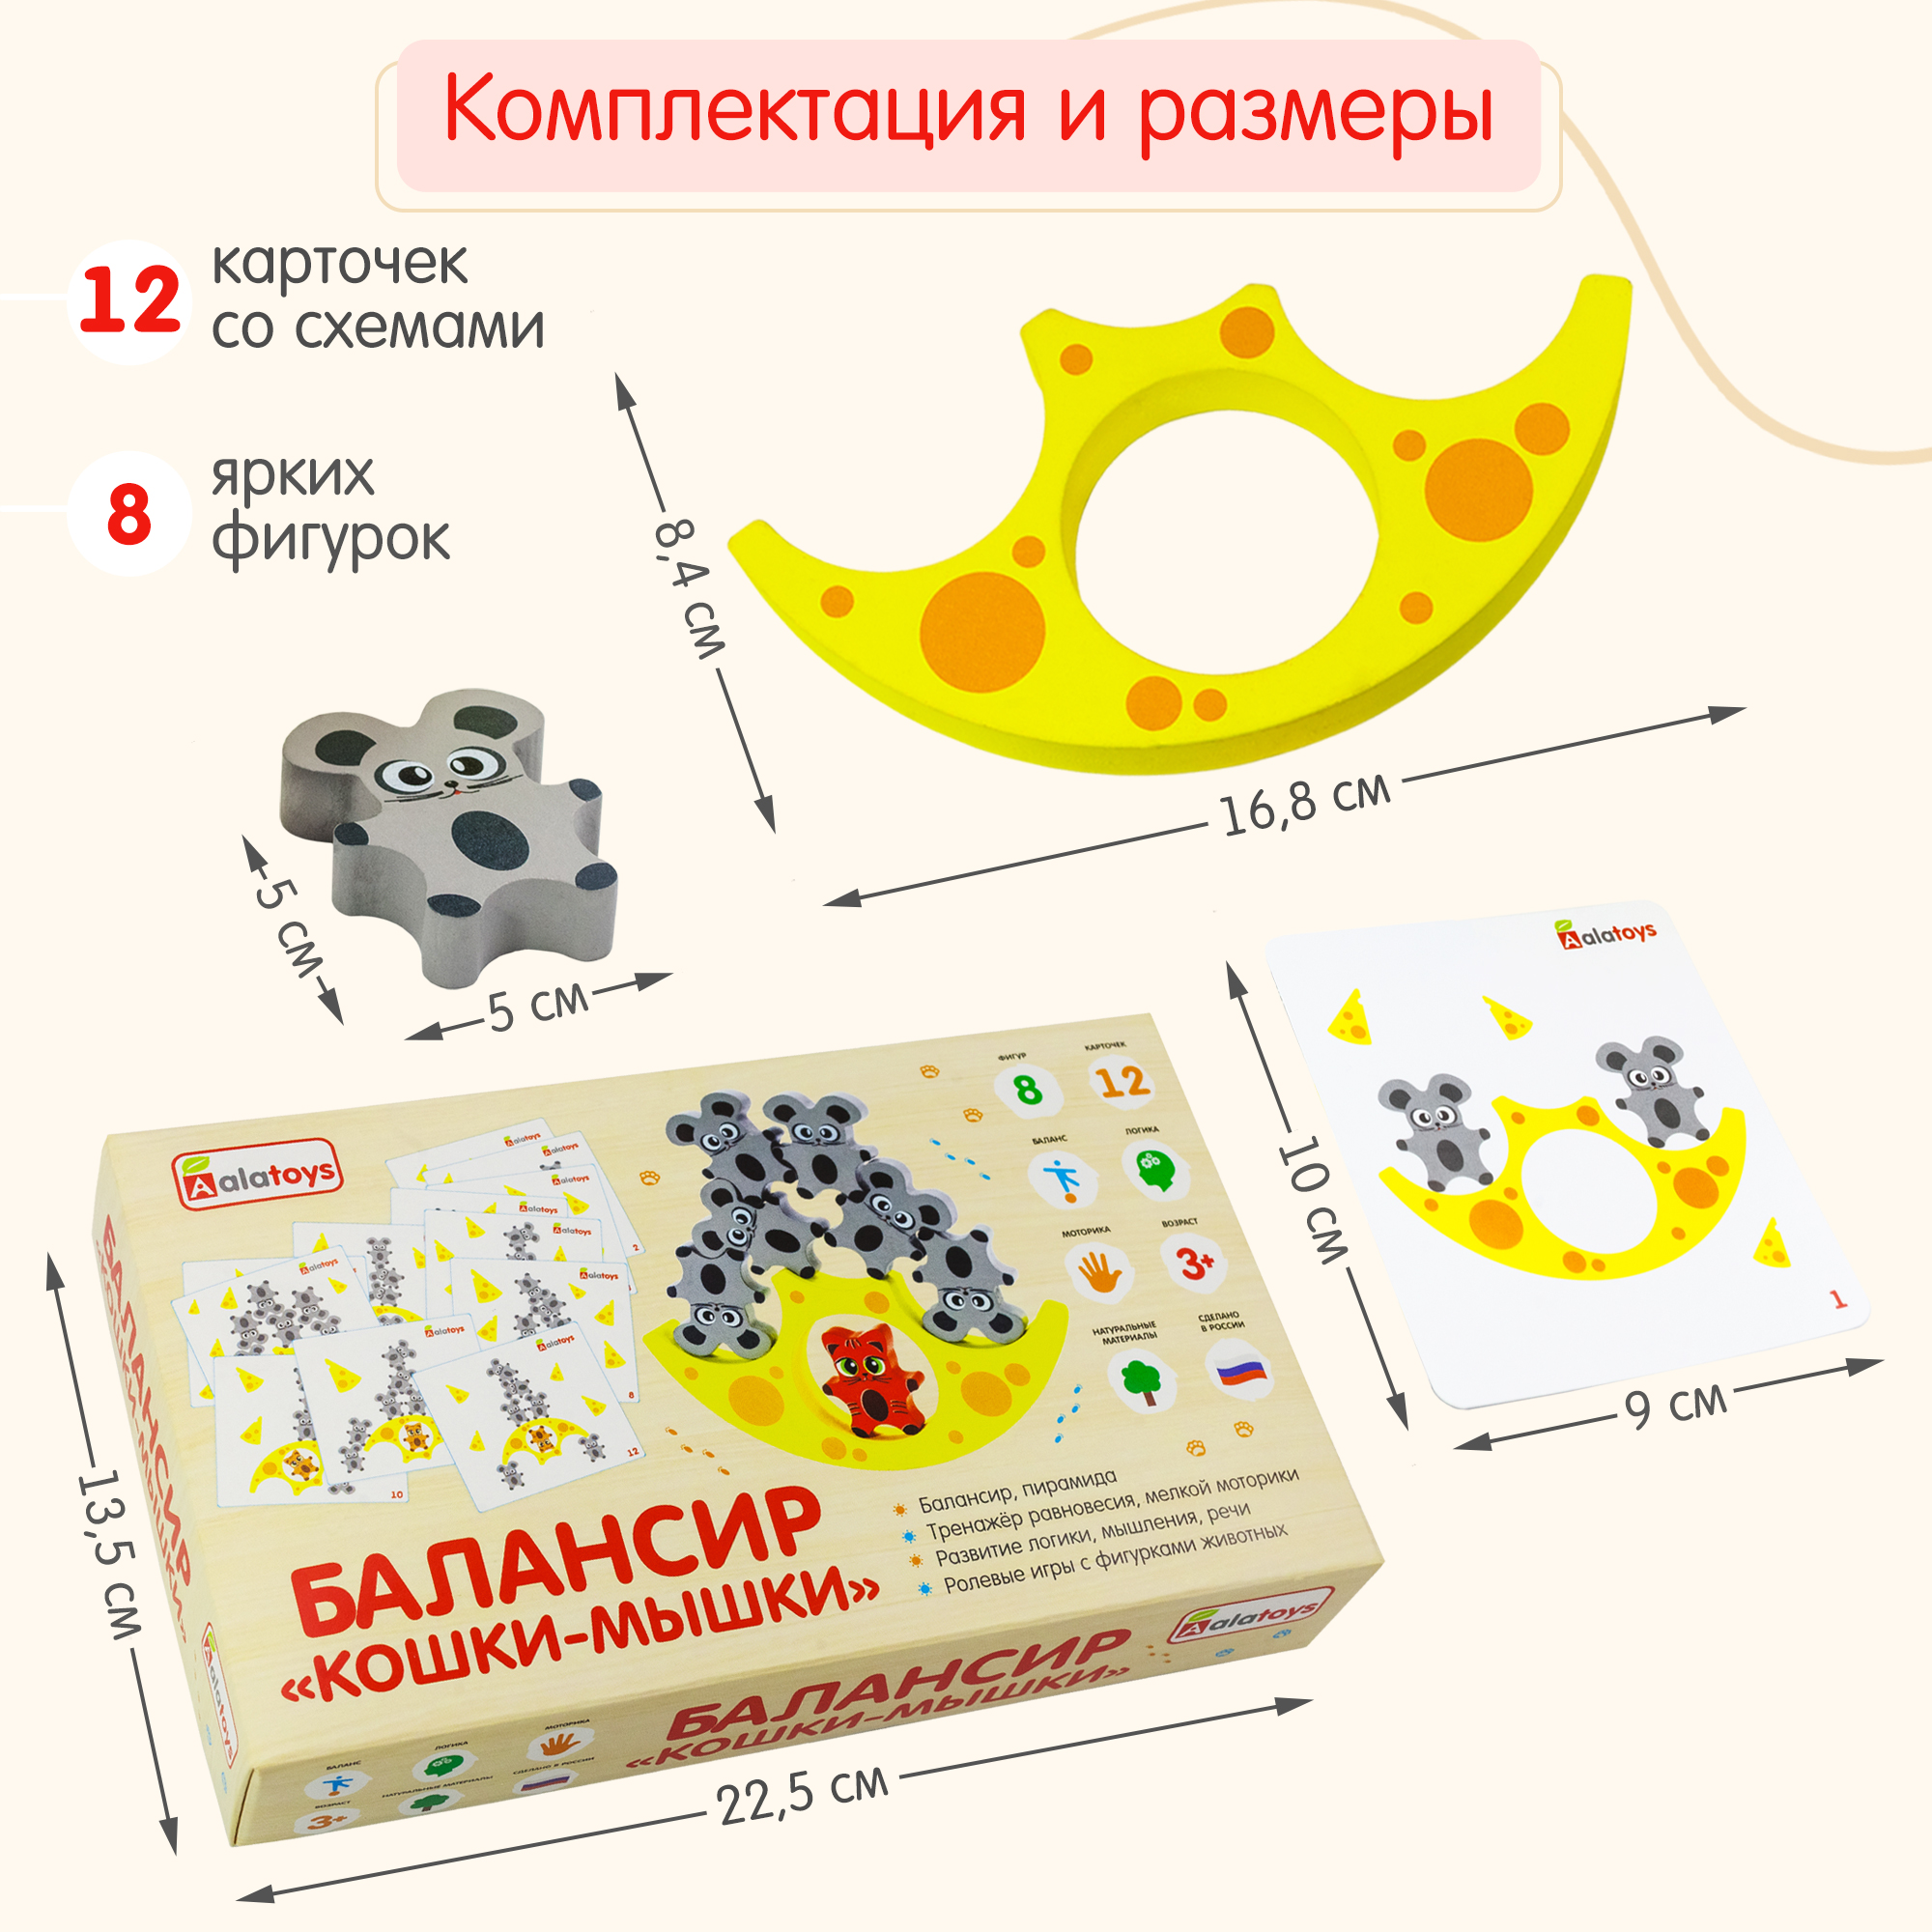 Балансир Кошки-Мышки Alatoys 8 фигурок деревянная развивающая игра - фото 11